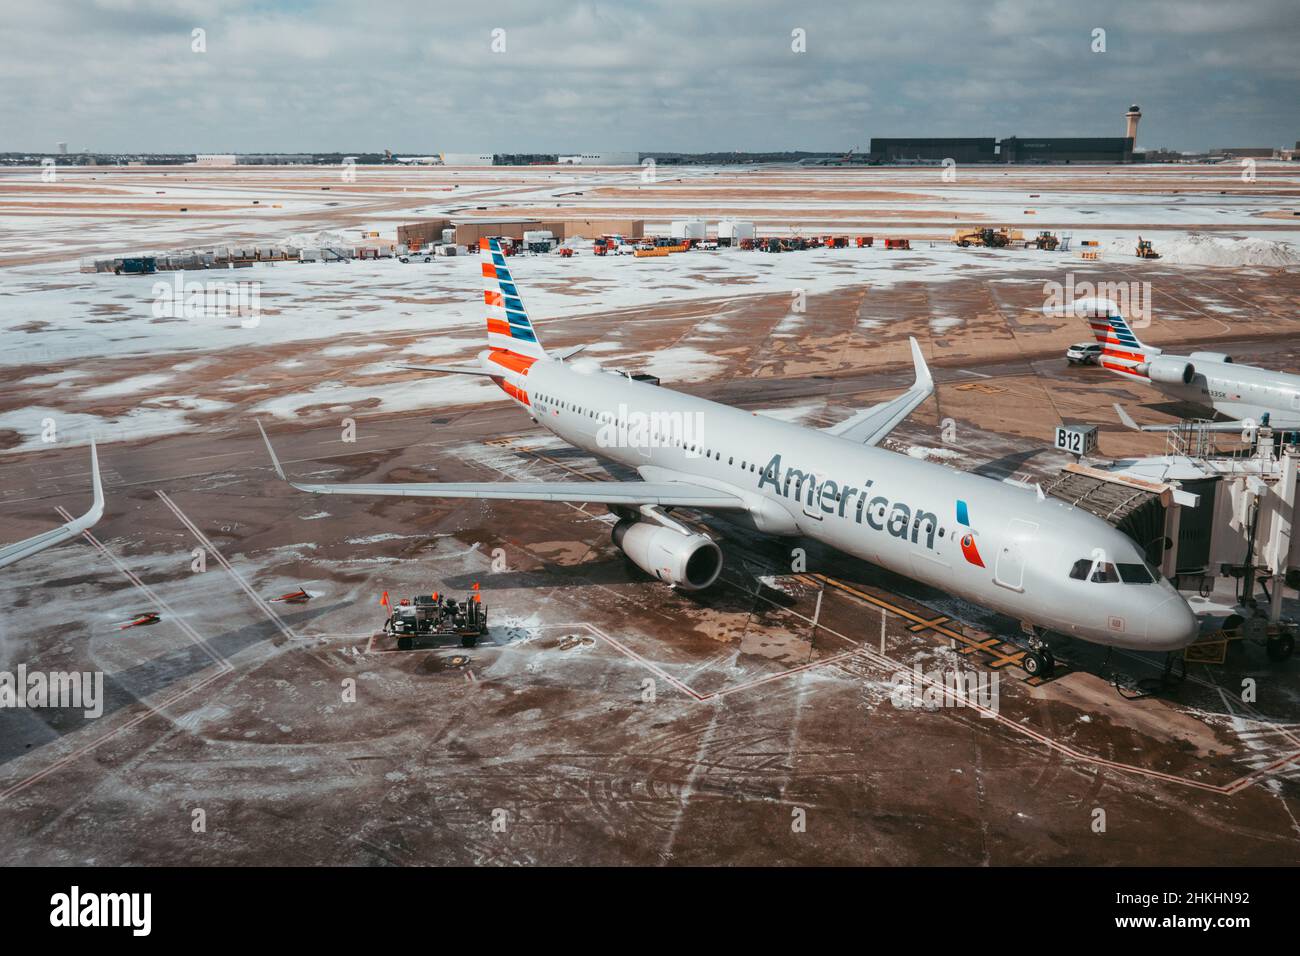 La glace et la neige fondent à l'aéroport international de Dallas fort Worth le 4th février 2022, après que Storm Landon a livré un coup d'hiver à la ville Banque D'Images